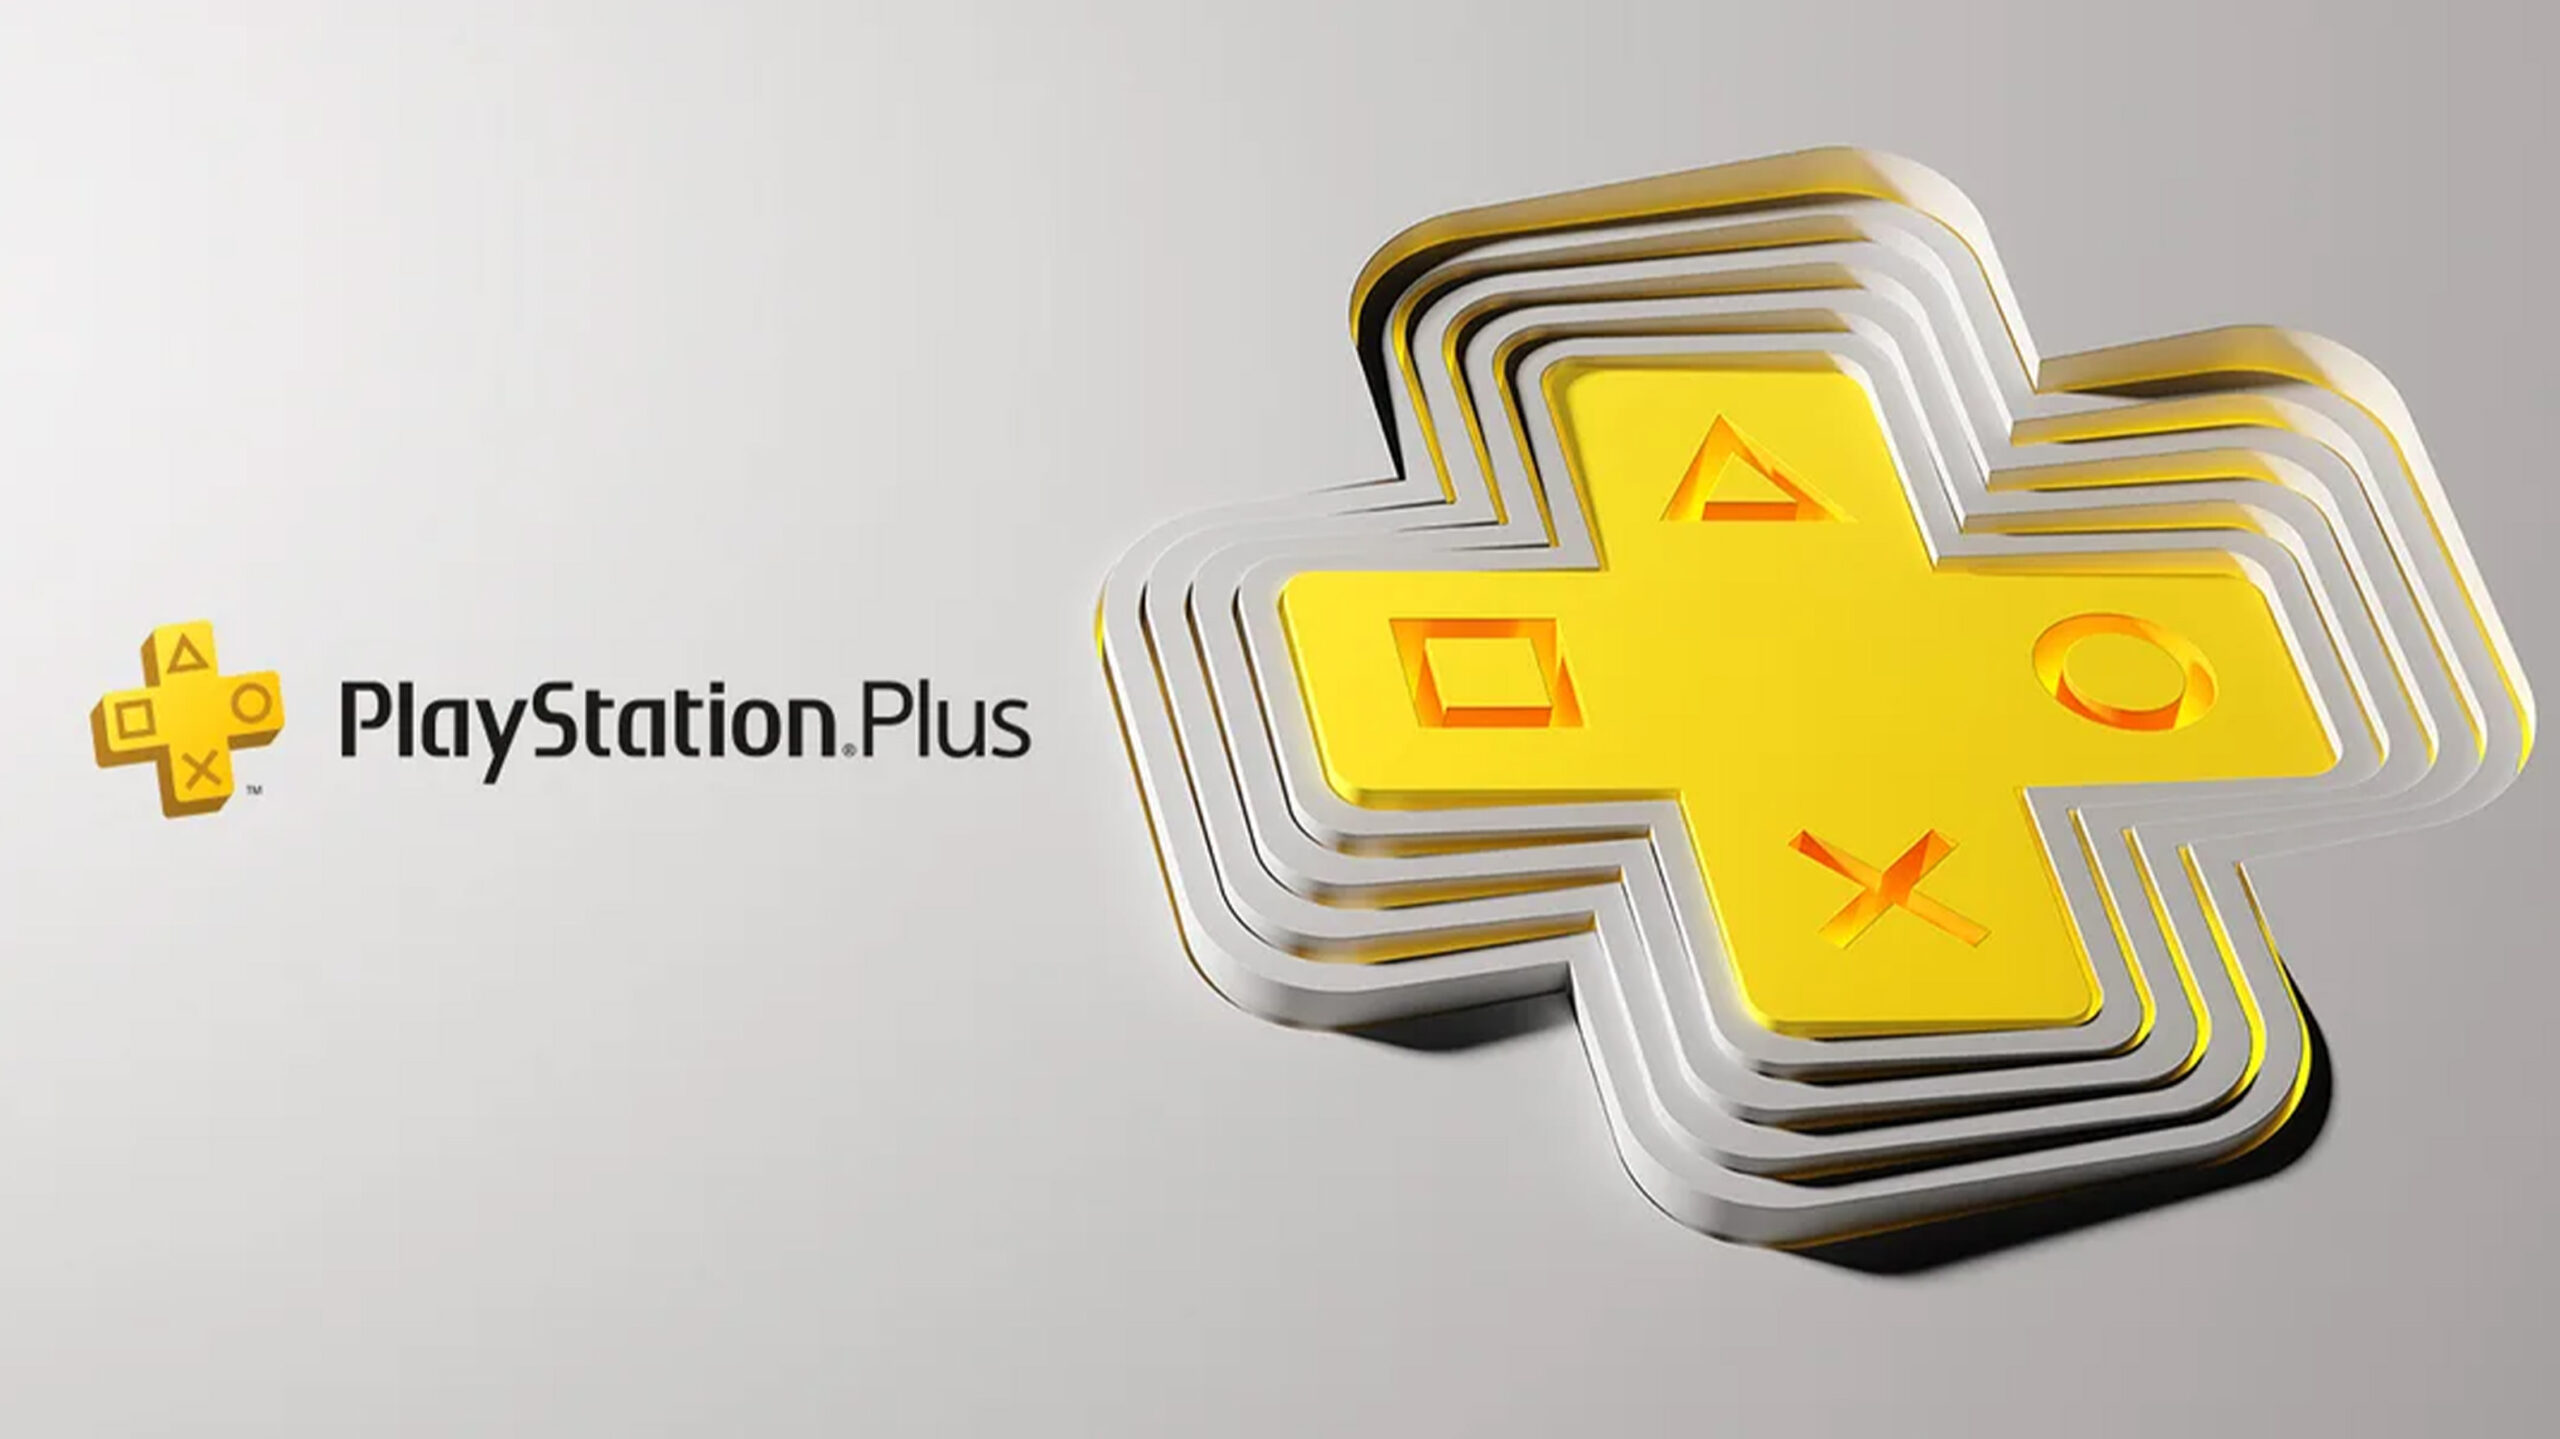 Comment le nouveau PlayStation Plus se compare au Xbox Game Pass, Nintendo Switch Online au Canada